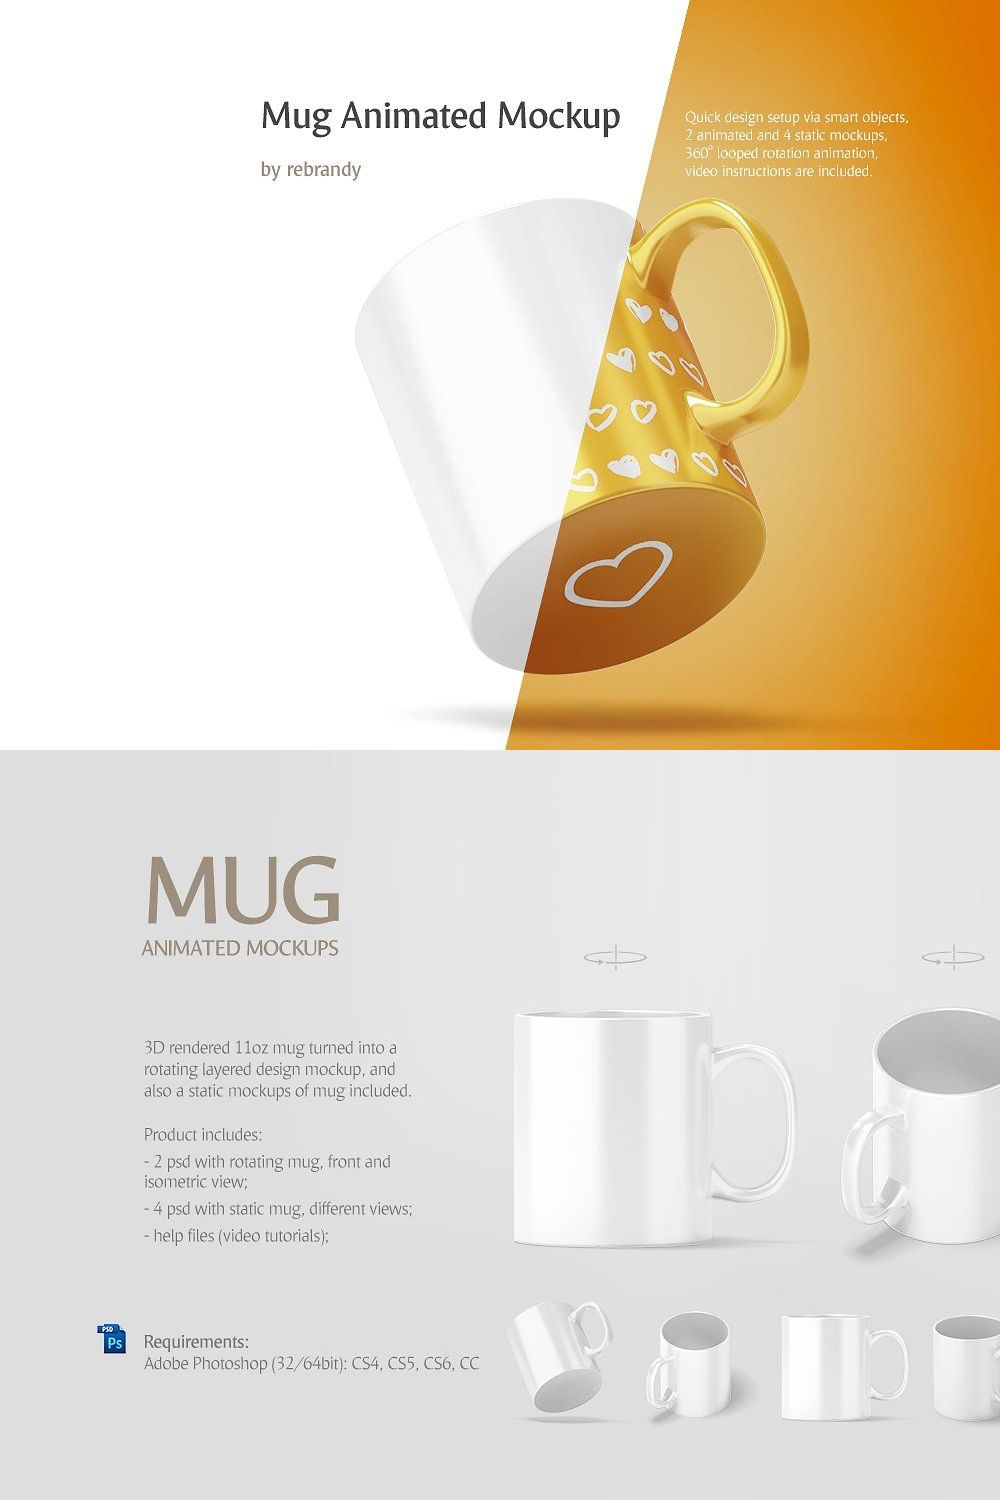 Mug Animated Mockup pinterest preview image.